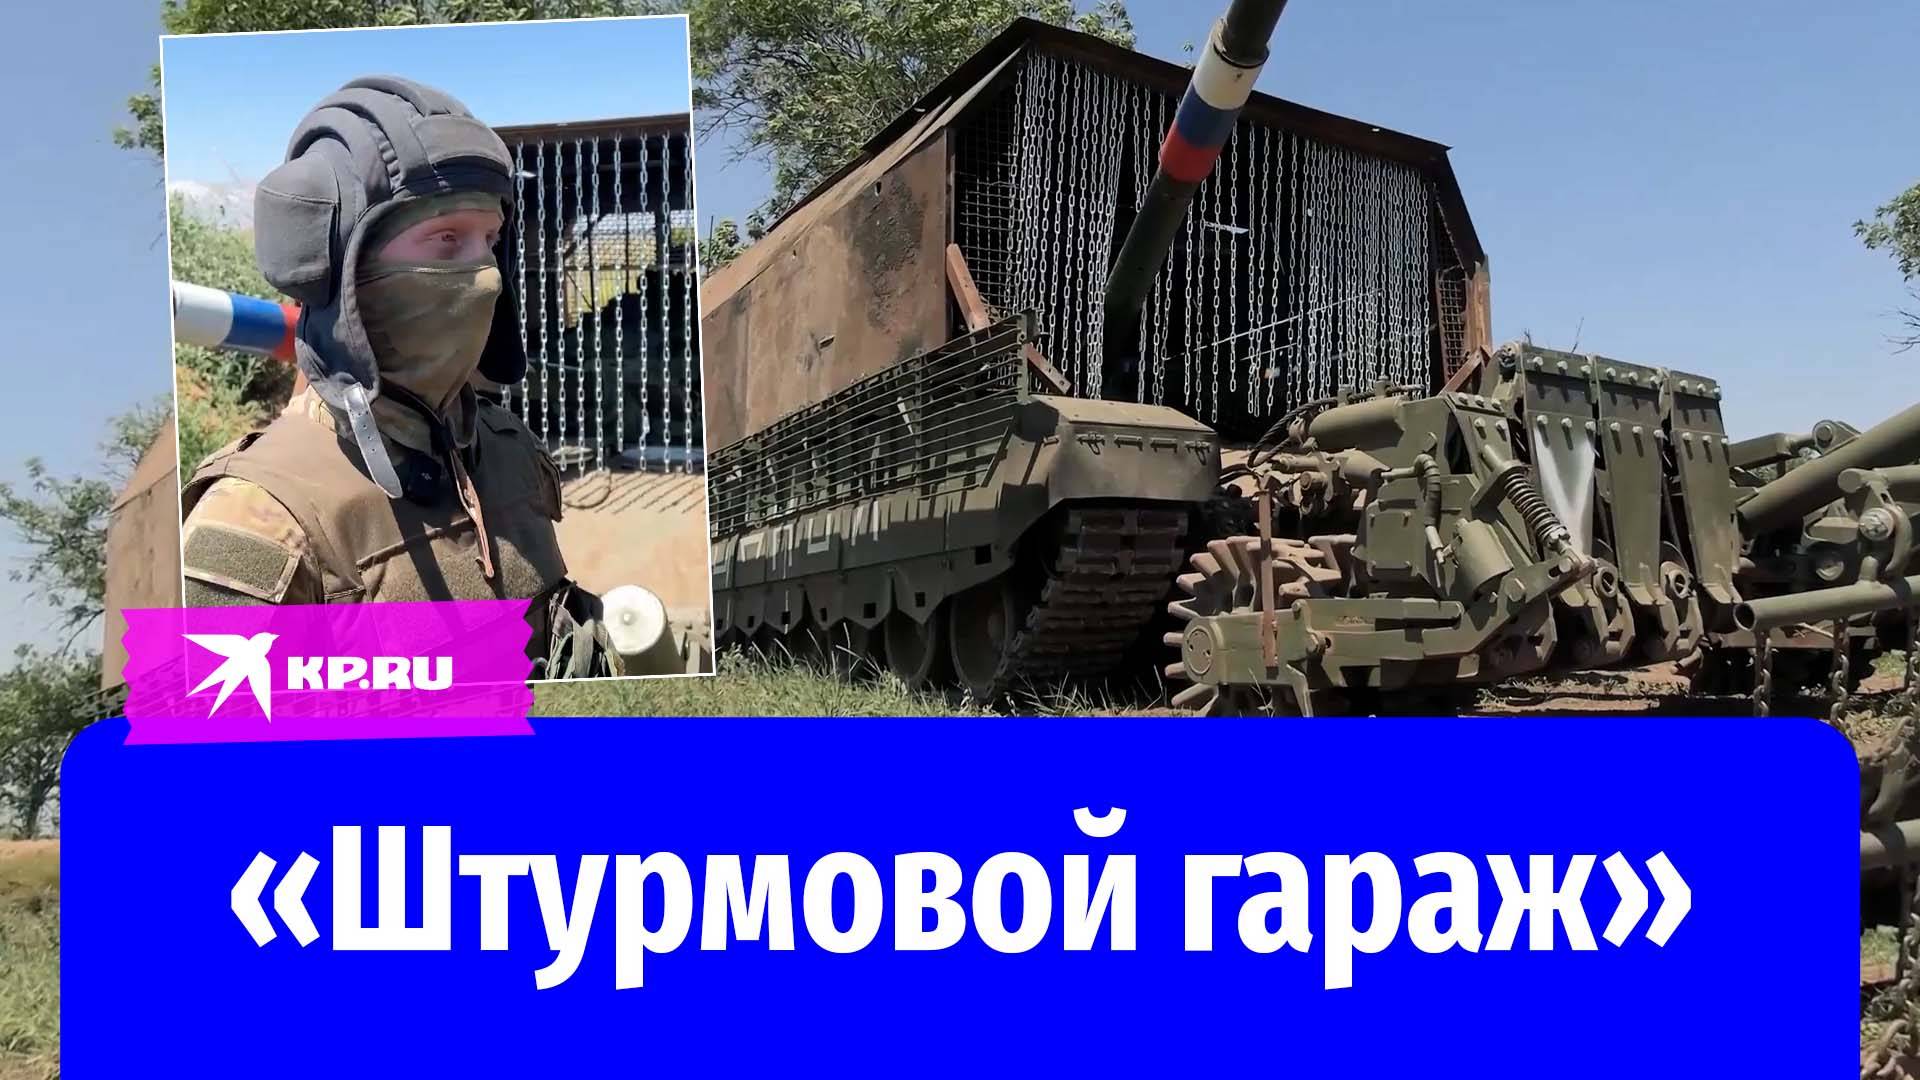 Боевая машина повезла на себе «гараж»: солдаты похвастались своим танком